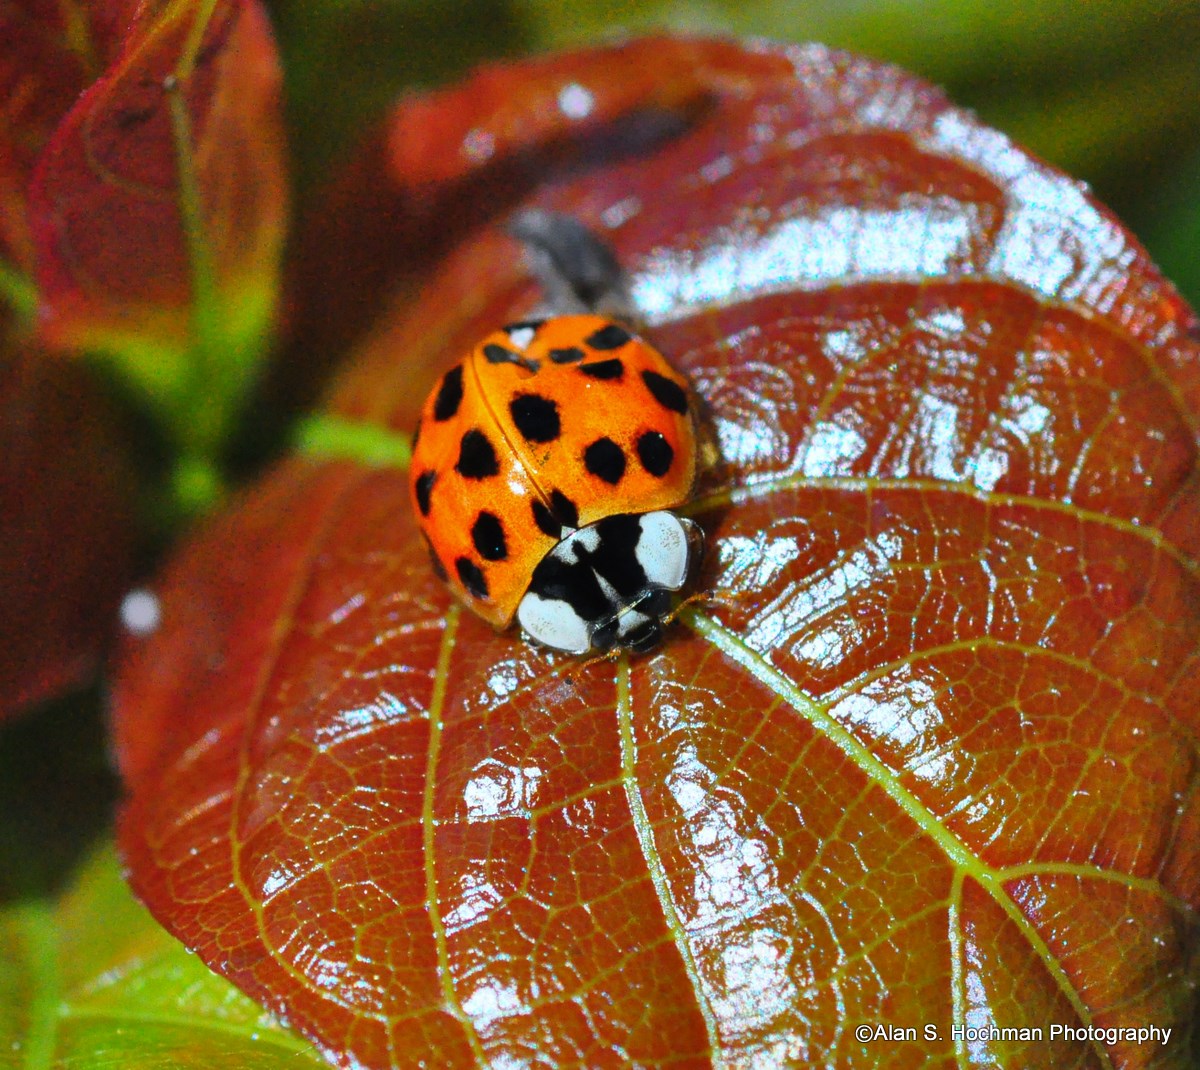 "Ladybug on leaf in Enchanted Forest Park"